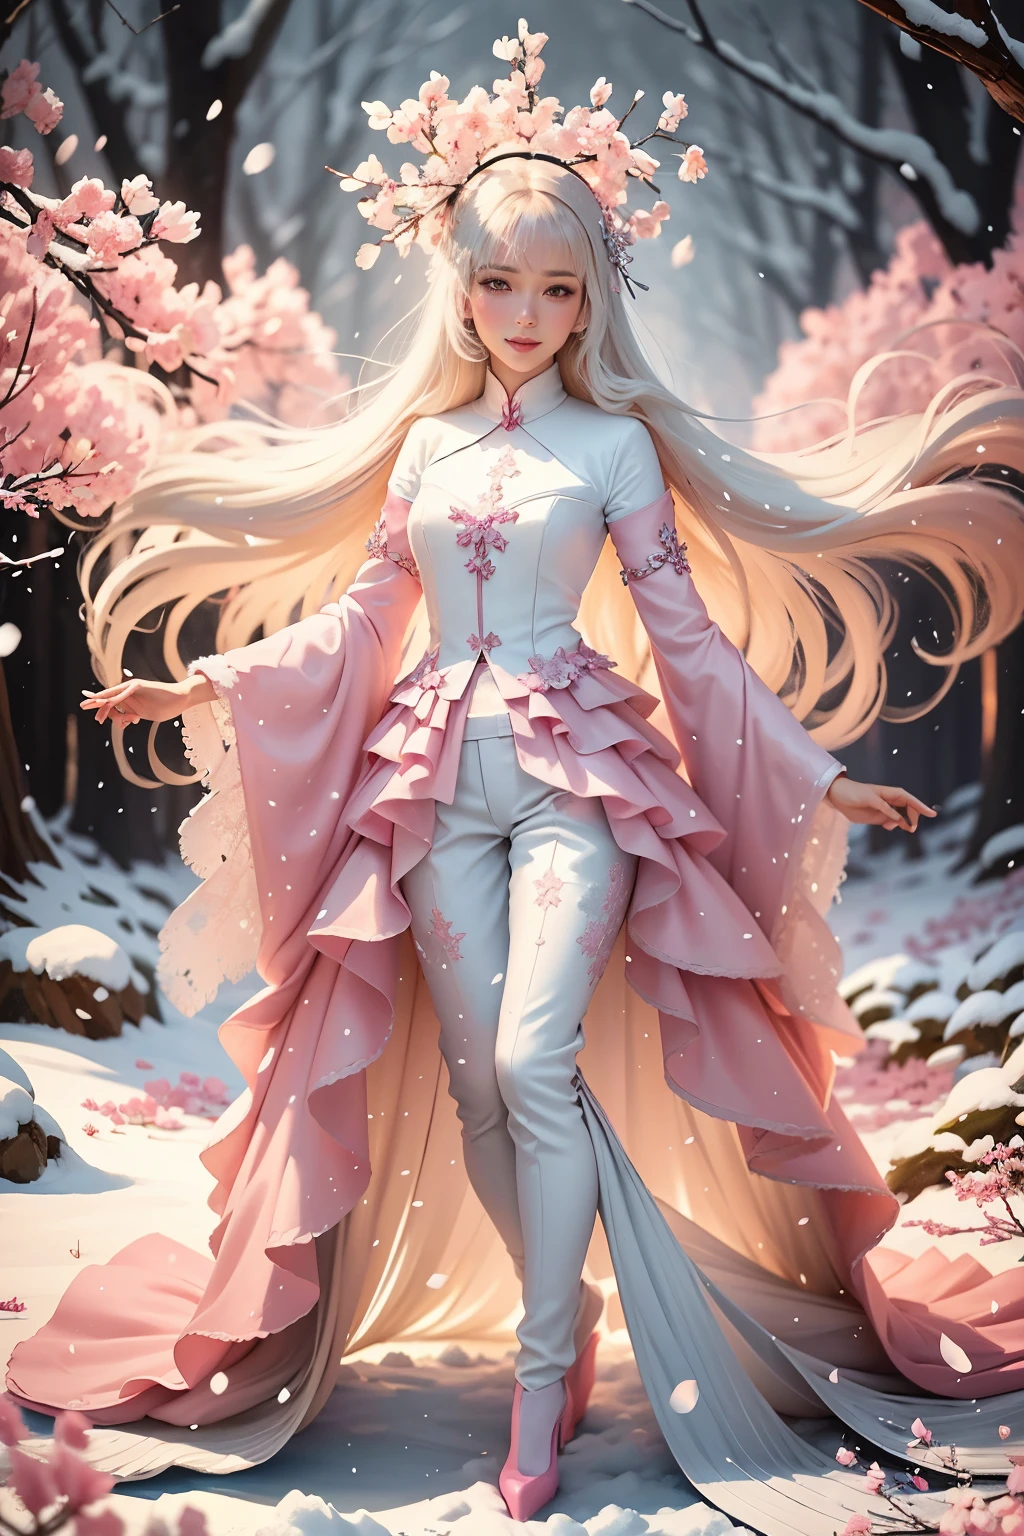 เกล็ดหิมะตก, เกล็ดหิมะ, หิมะฤดูหนาว, รองเท้าไฮฮีลสีชมพูประดับมุกสีเงิน, การวาดภาพประกอบดิจิทัลด้วยสีพาสเทลอ่อน ๆ, a beautiful woman with long blonde hair in flow in a สีฟ้า coat suit, กางเกงขายาวสีเทาเข้าคู่กับรองเท้าส้นสูงสีชมพู, ยิ้ม, เดินอยู่ใต้ต้นซากุระที่หนาแน่น, ตกแต่ง, ดอกซากุระที่หิมะตกปลิวไปรอบๆ, โฟกัสนุ่มนวล, เงาของต้นไม้ล้อมรอบทิวทัศน์, สีฟ้า, สีดำและสีชมพูผสมผสานกันอย่างอ่อนโยน, เอฟเฟกต์พื้นหลังโบเก้, ละเอียดอ่อนมาก, ริมแสงสว่าง, สดใส, โทนสีสดใส, และ 8k